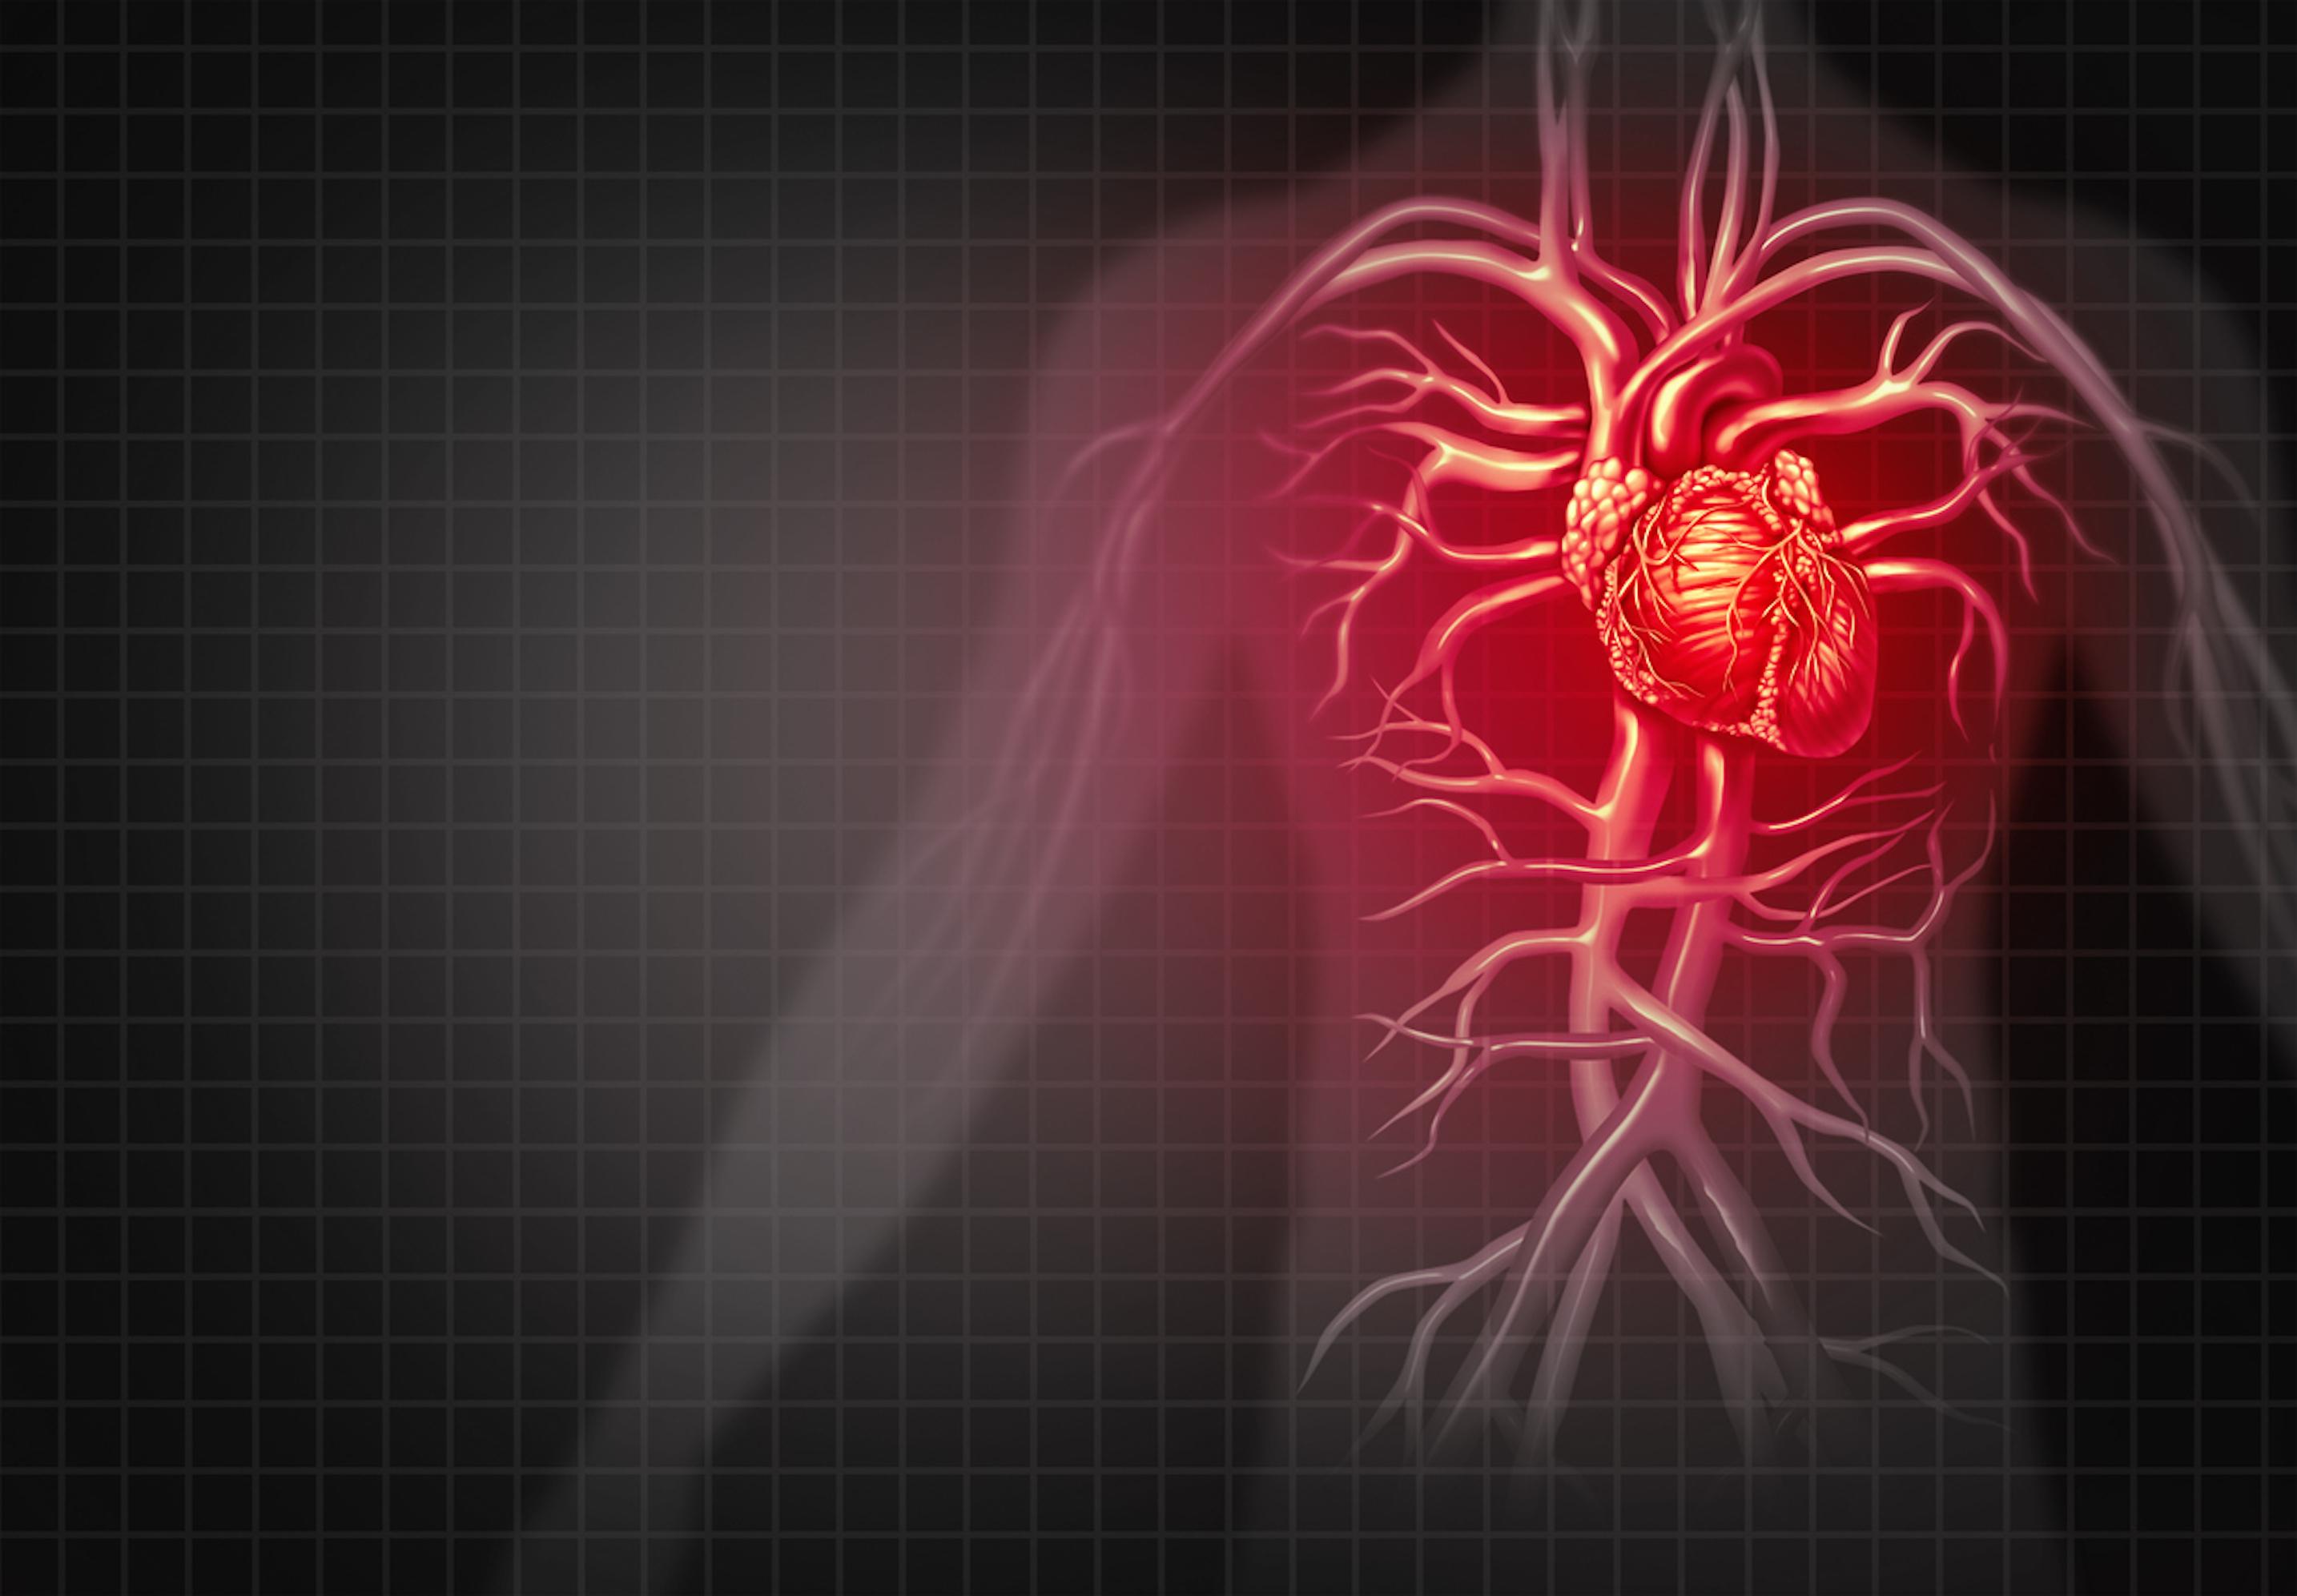 Risque cardiovasculaire : les MICI multiplient par 9 le risque de crise cardiaque